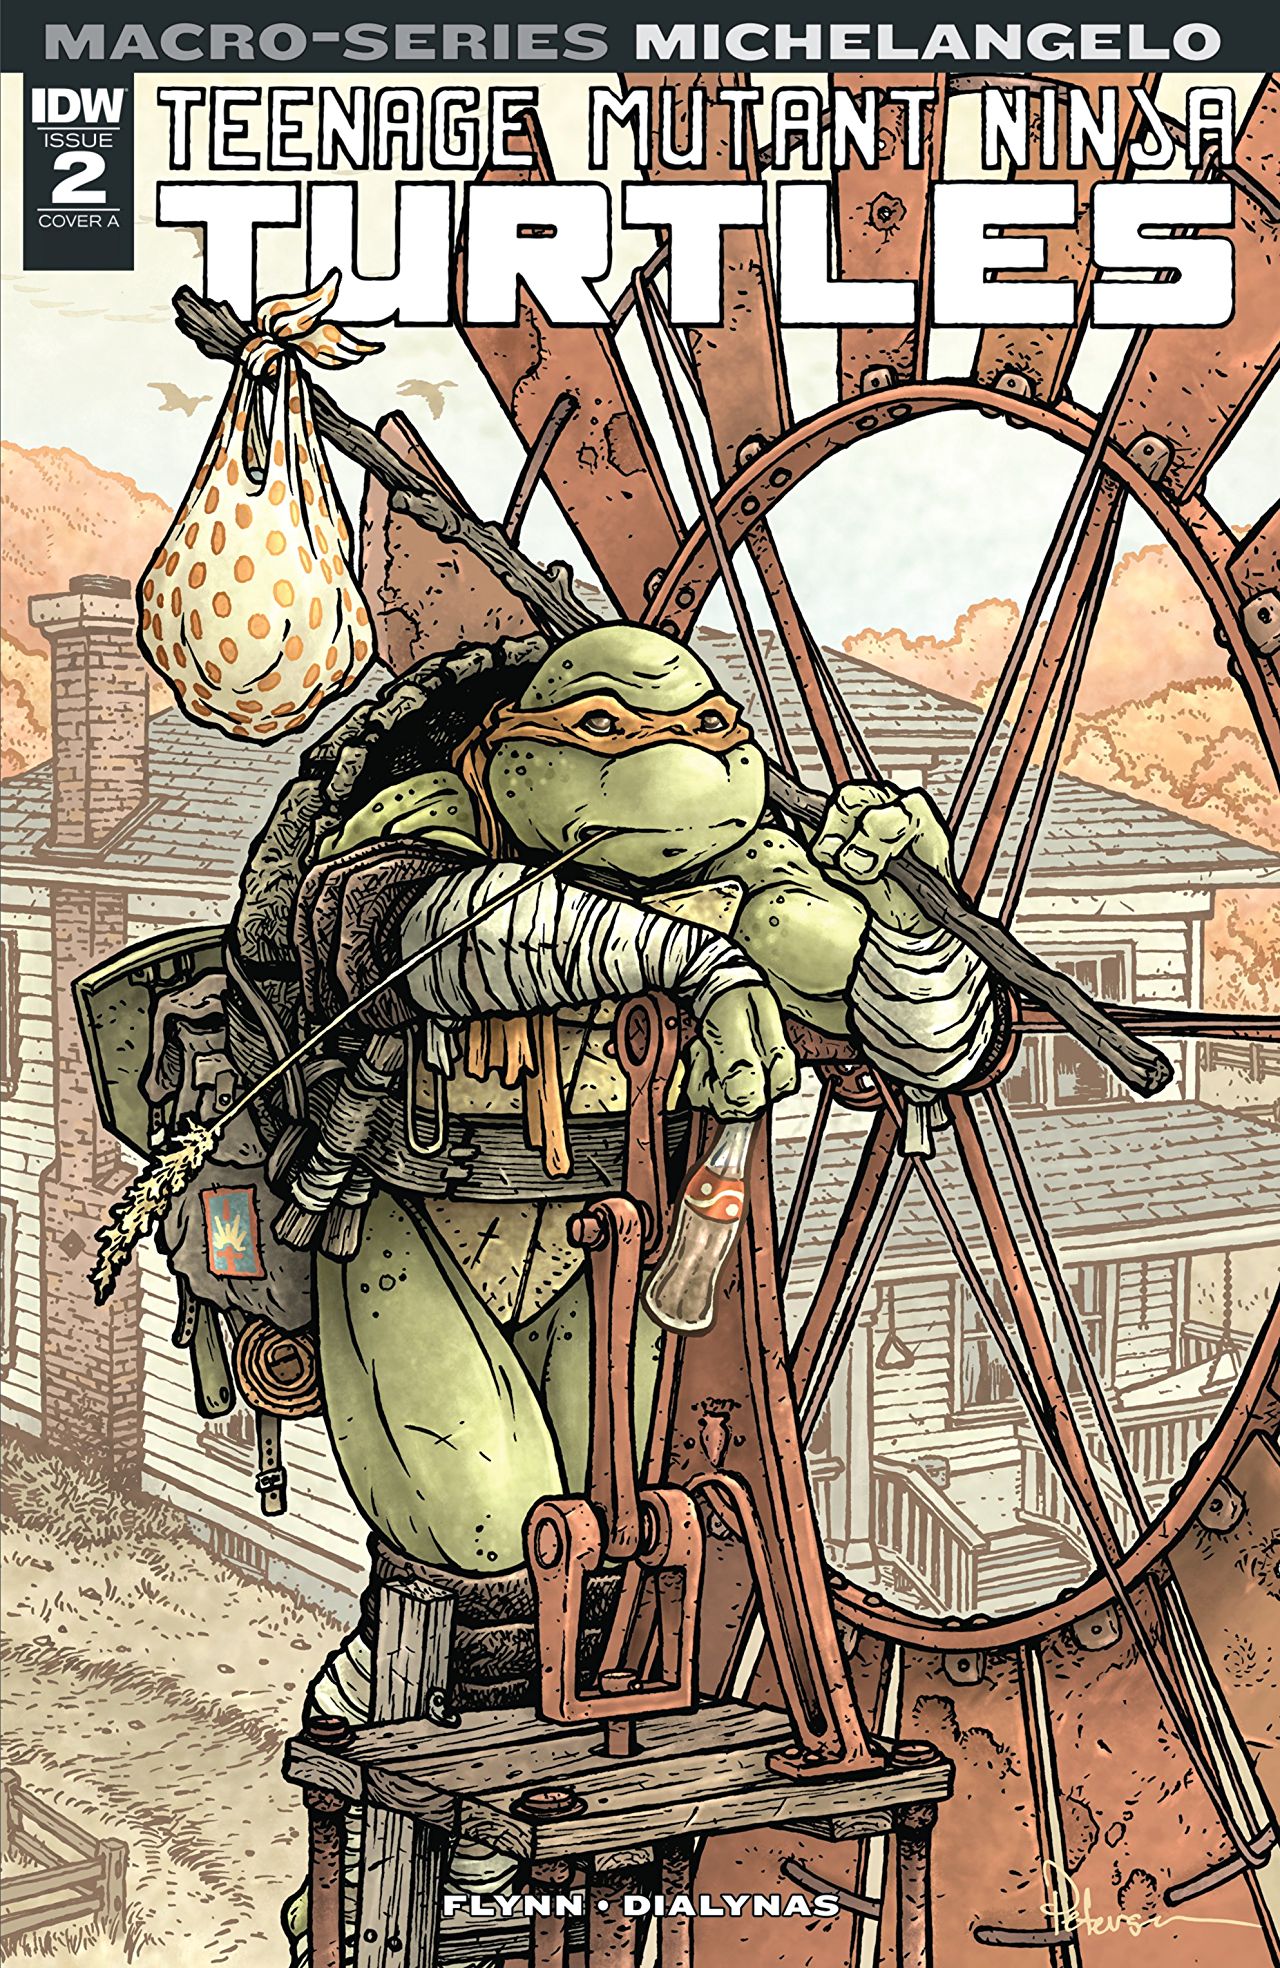 Teenage Mutant Ninja Turtles: Michelangelo no. 2 (2018 Series)